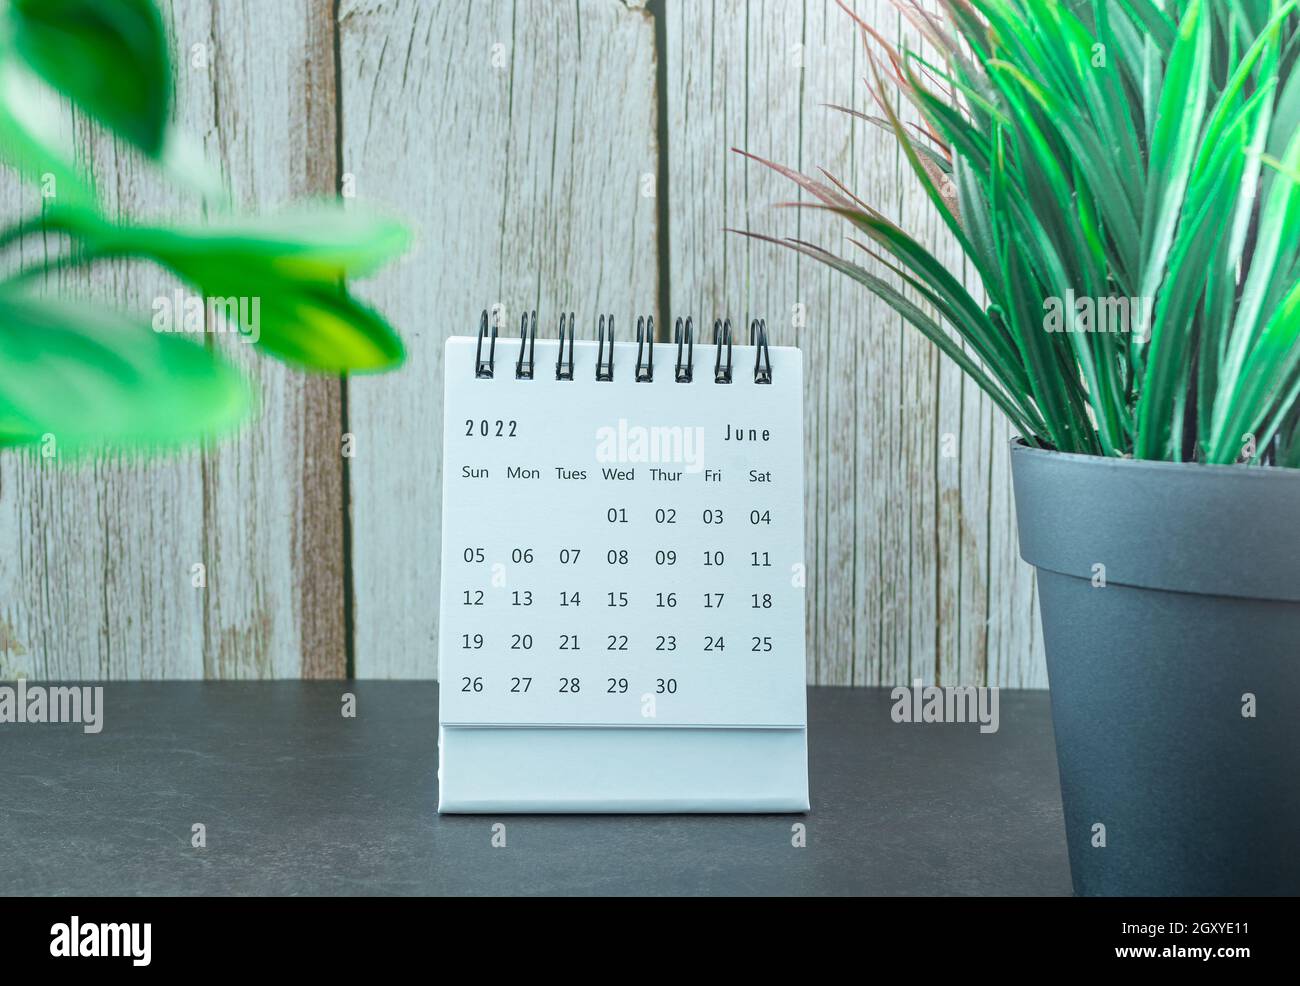 Calendrier blanc de juin 2022 avec plante en pot.Concept du nouvel an 2022 Banque D'Images